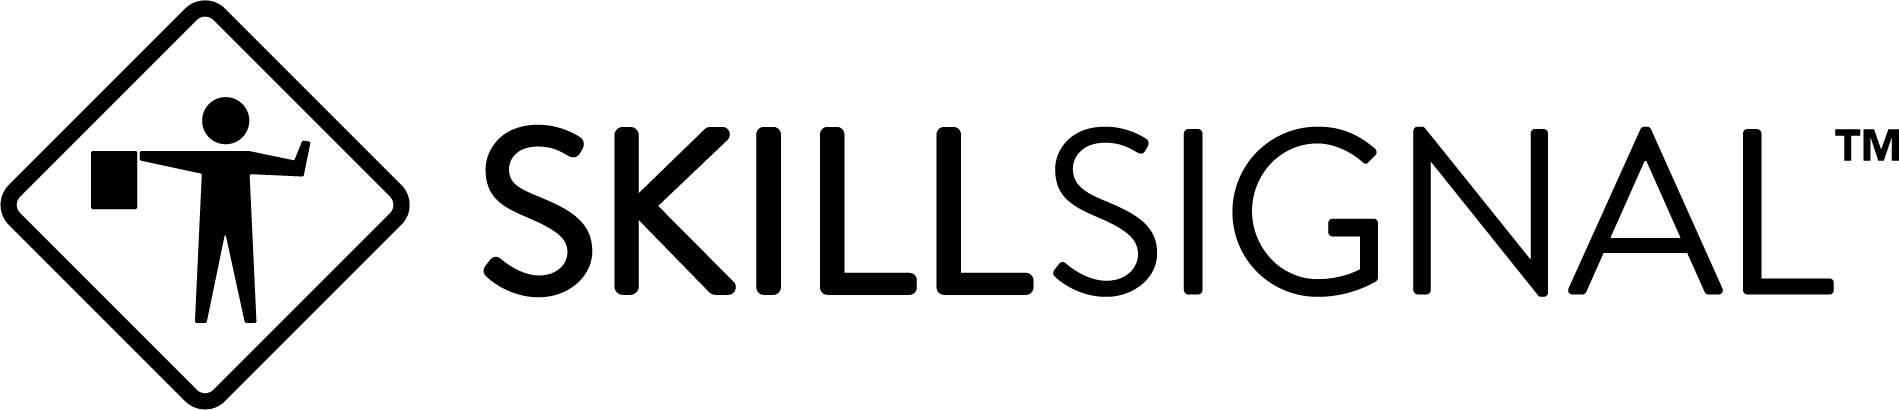 SkillSignal Logo